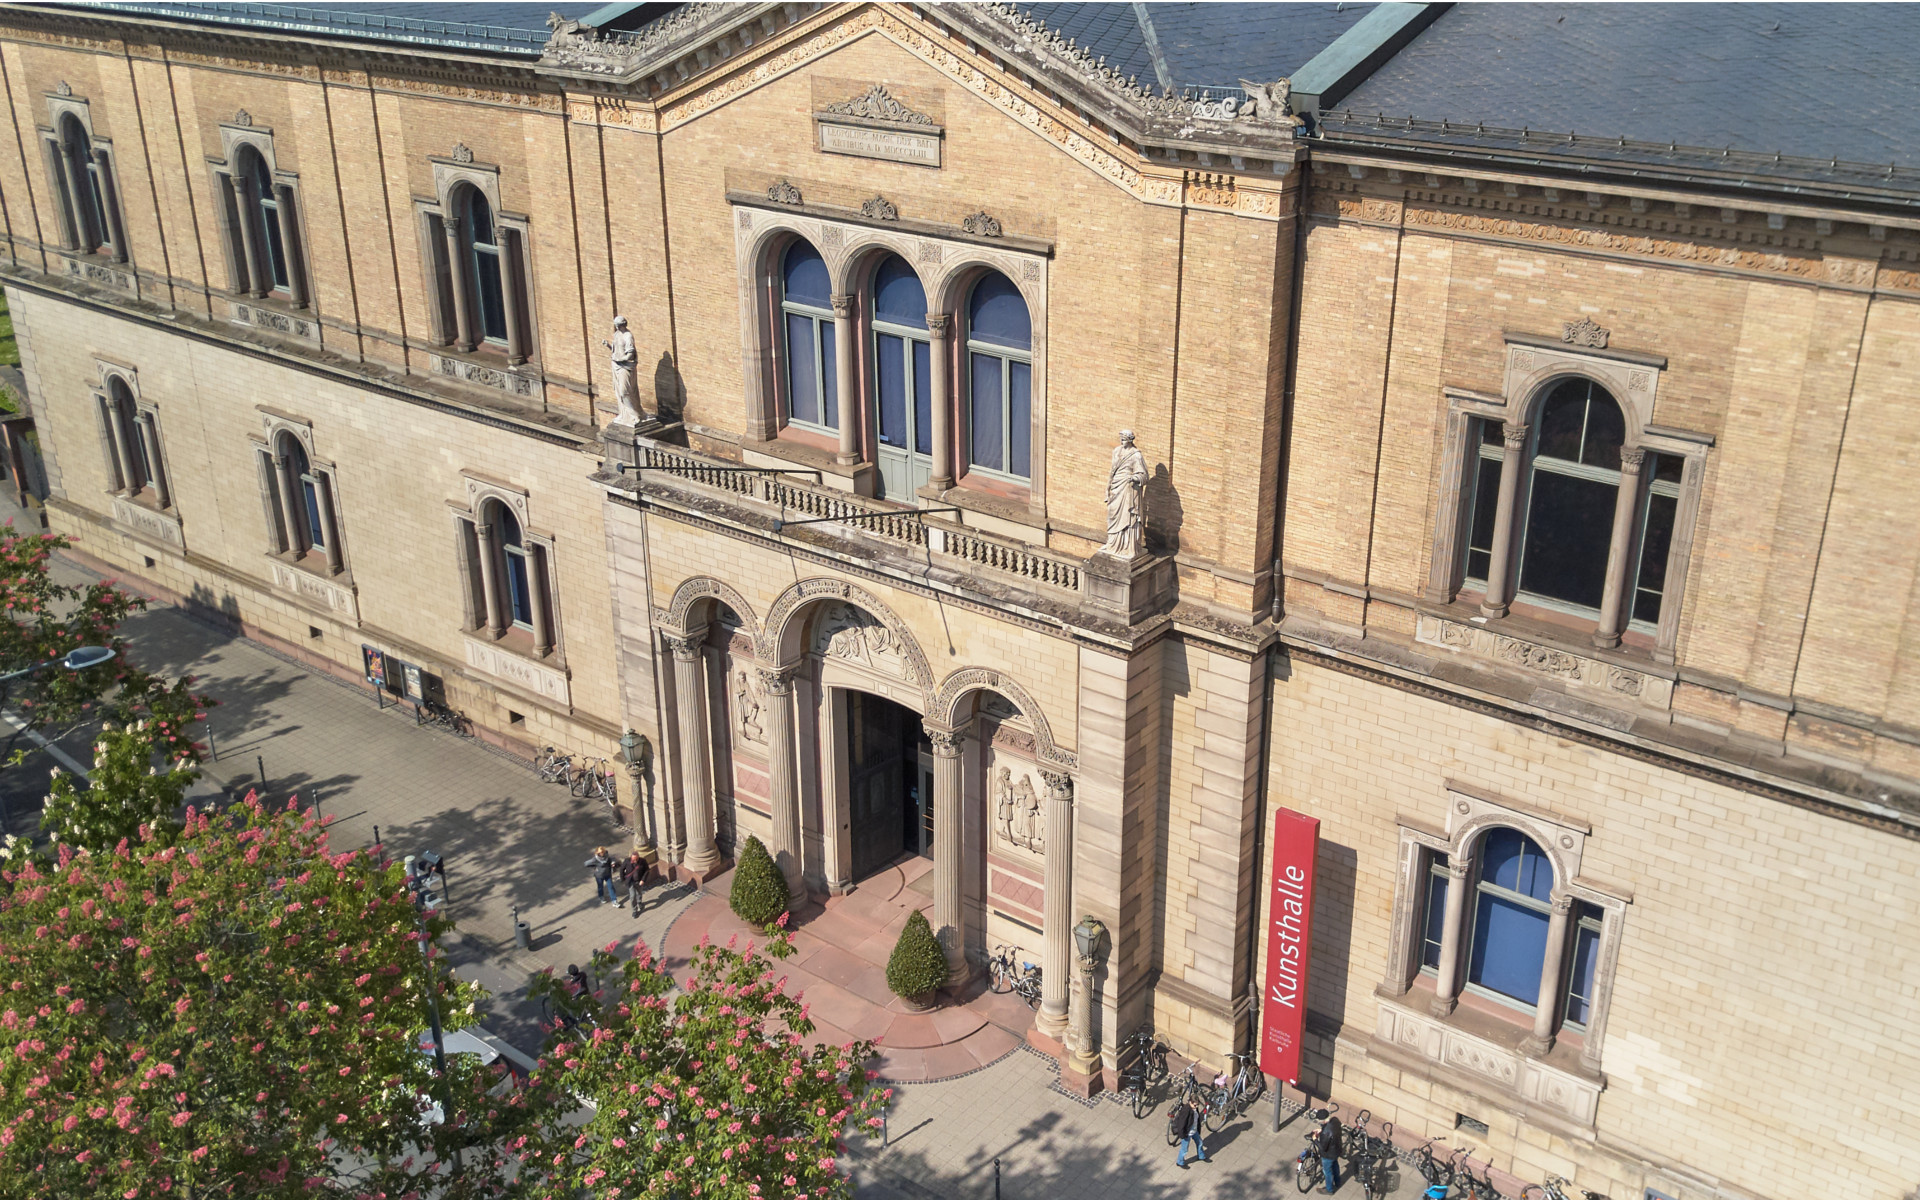 Foto aus der Luftperspektive auf das Hauptgebäude der Kunsthalle Karlsruhe